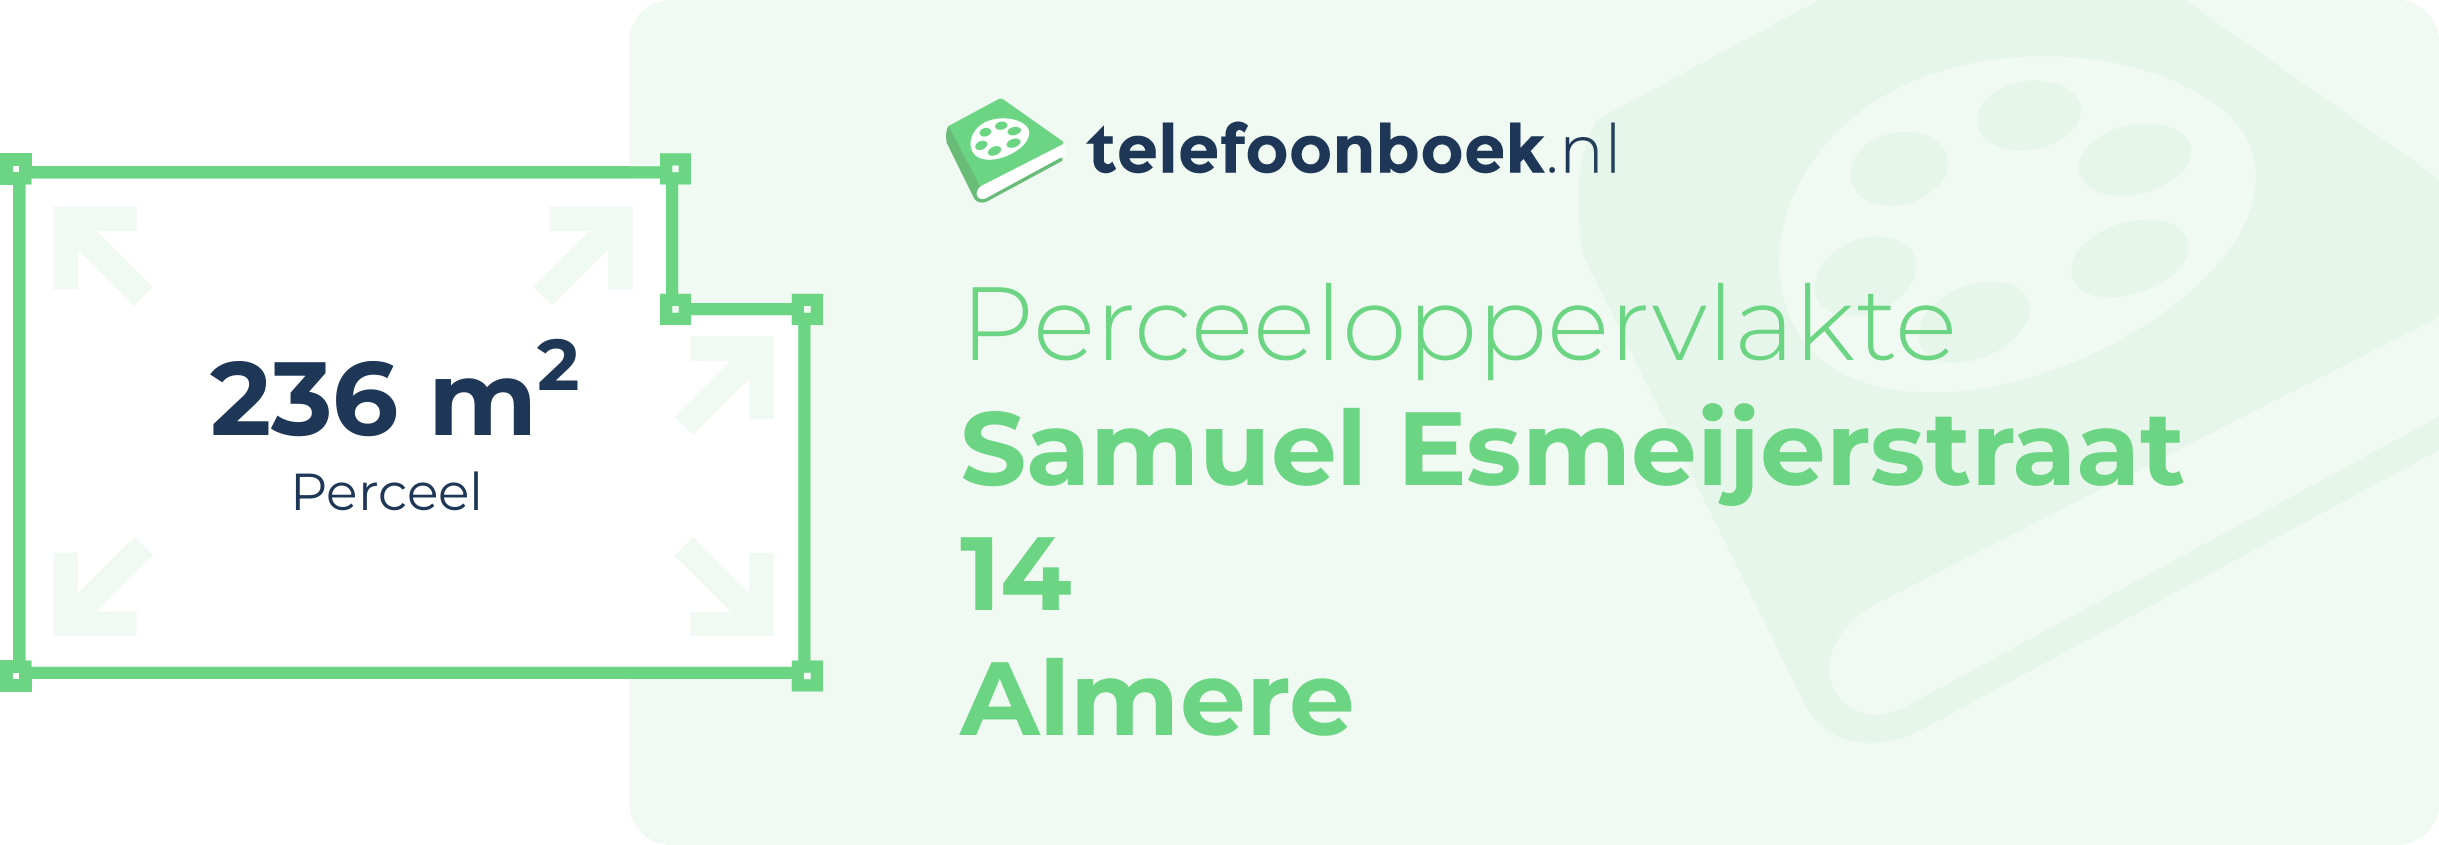 Perceeloppervlakte Samuel Esmeijerstraat 14 Almere